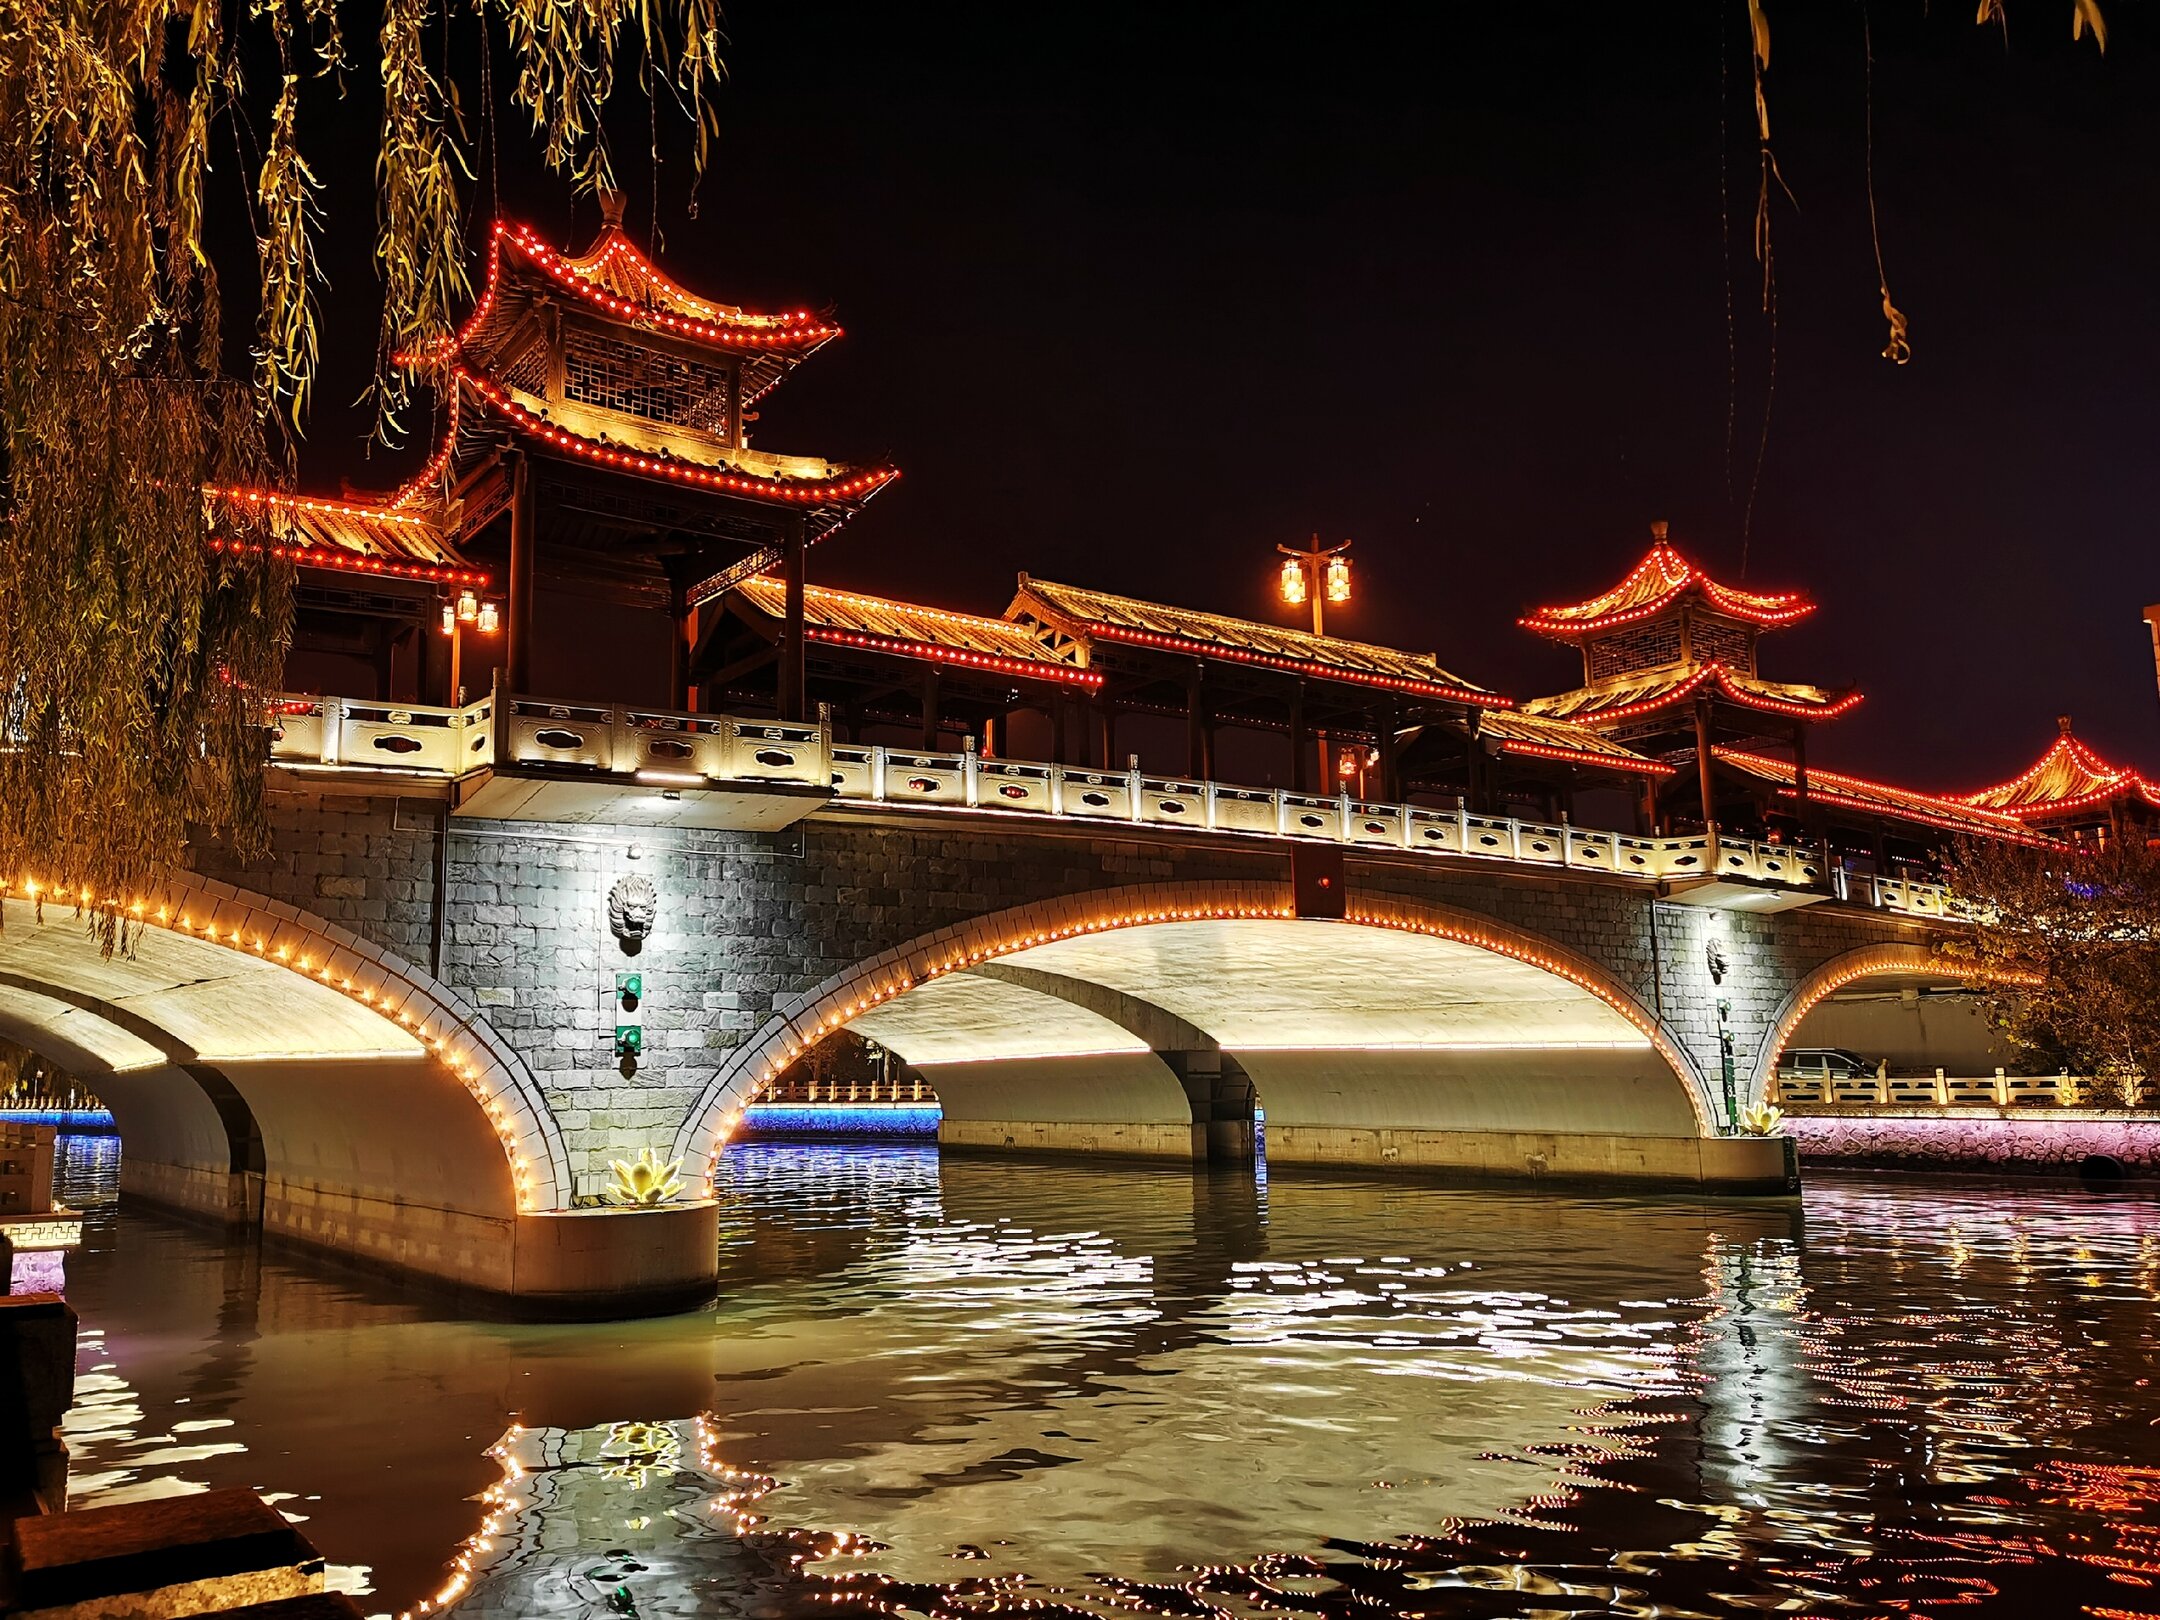 古运河穿扬州城而过,美丽夜景,常常吸引我前往欣赏,把它收入镜头.